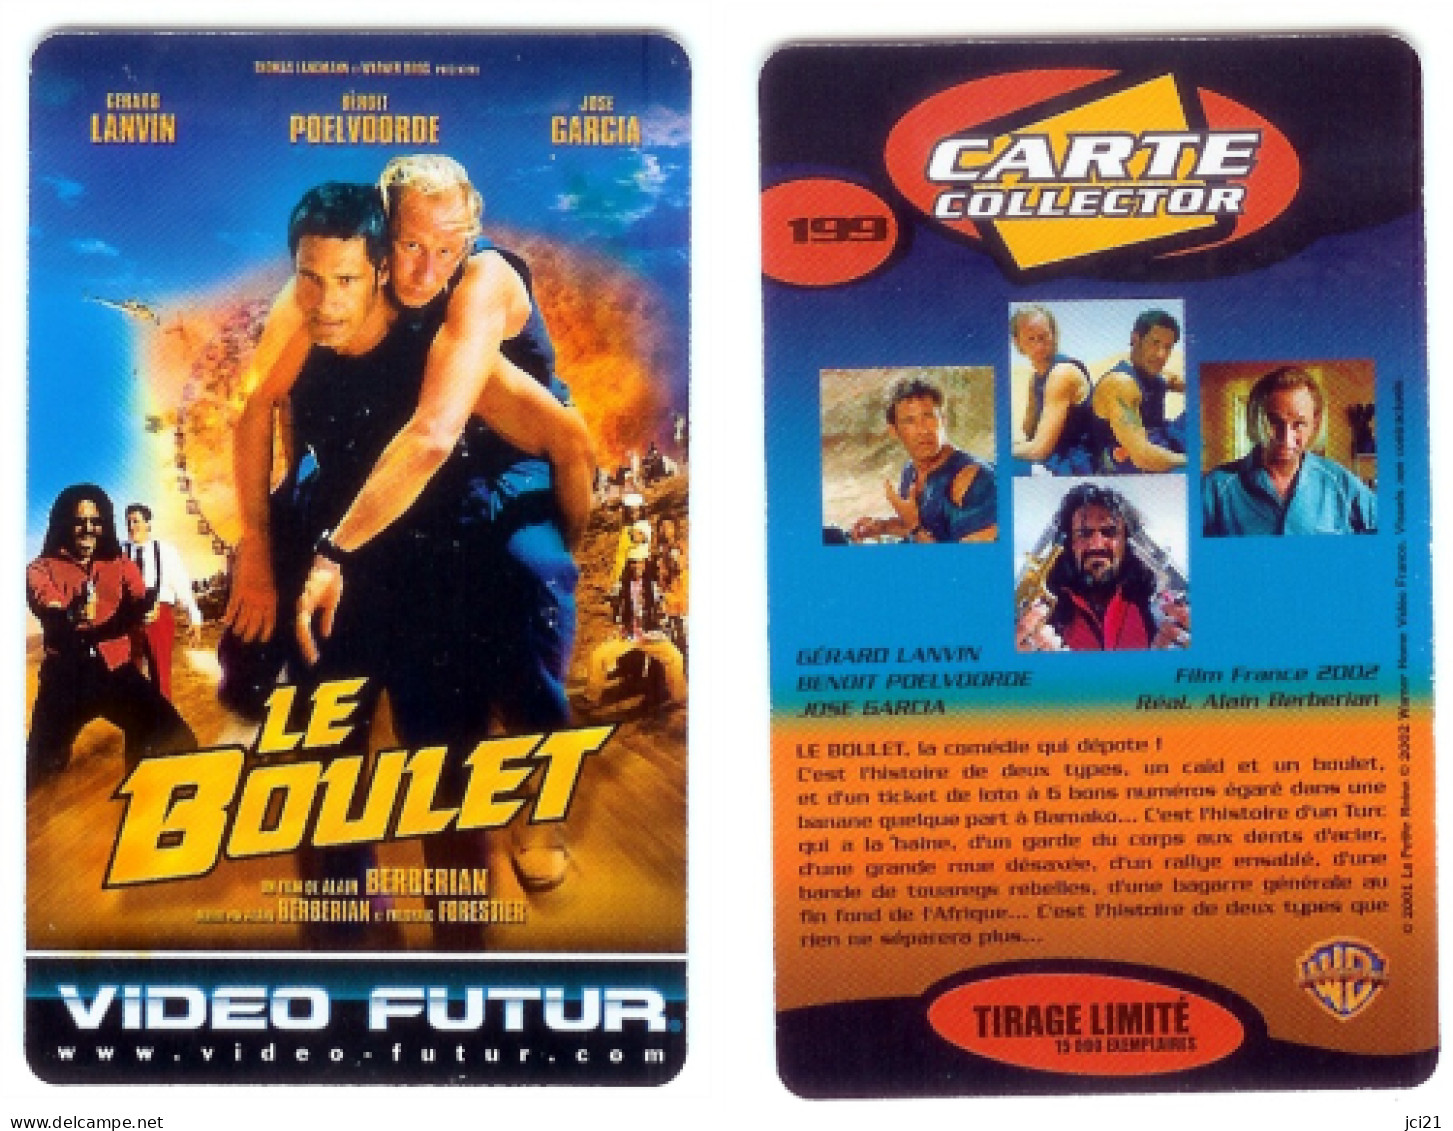 Carte VIDEO FUTUR N° 199 "LE BOULET" (VF199)_Cvf2 - Video Futur